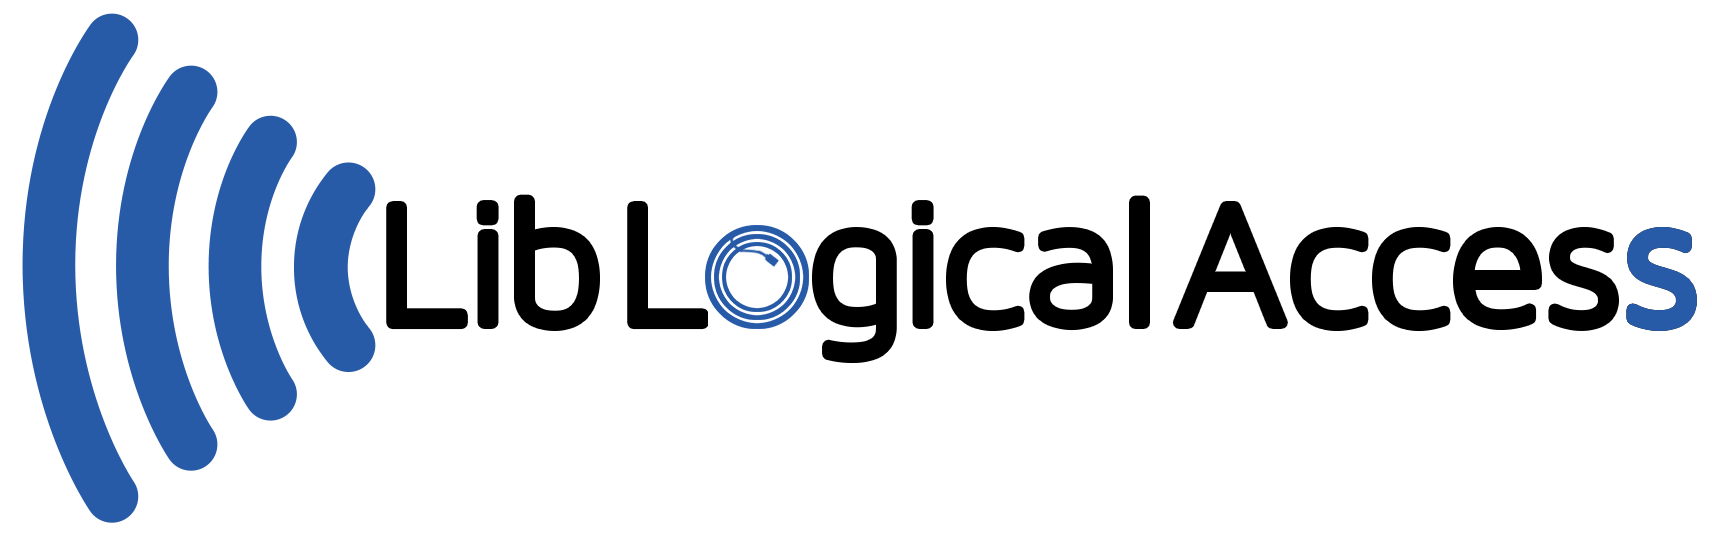 liblogicalaccess_logo